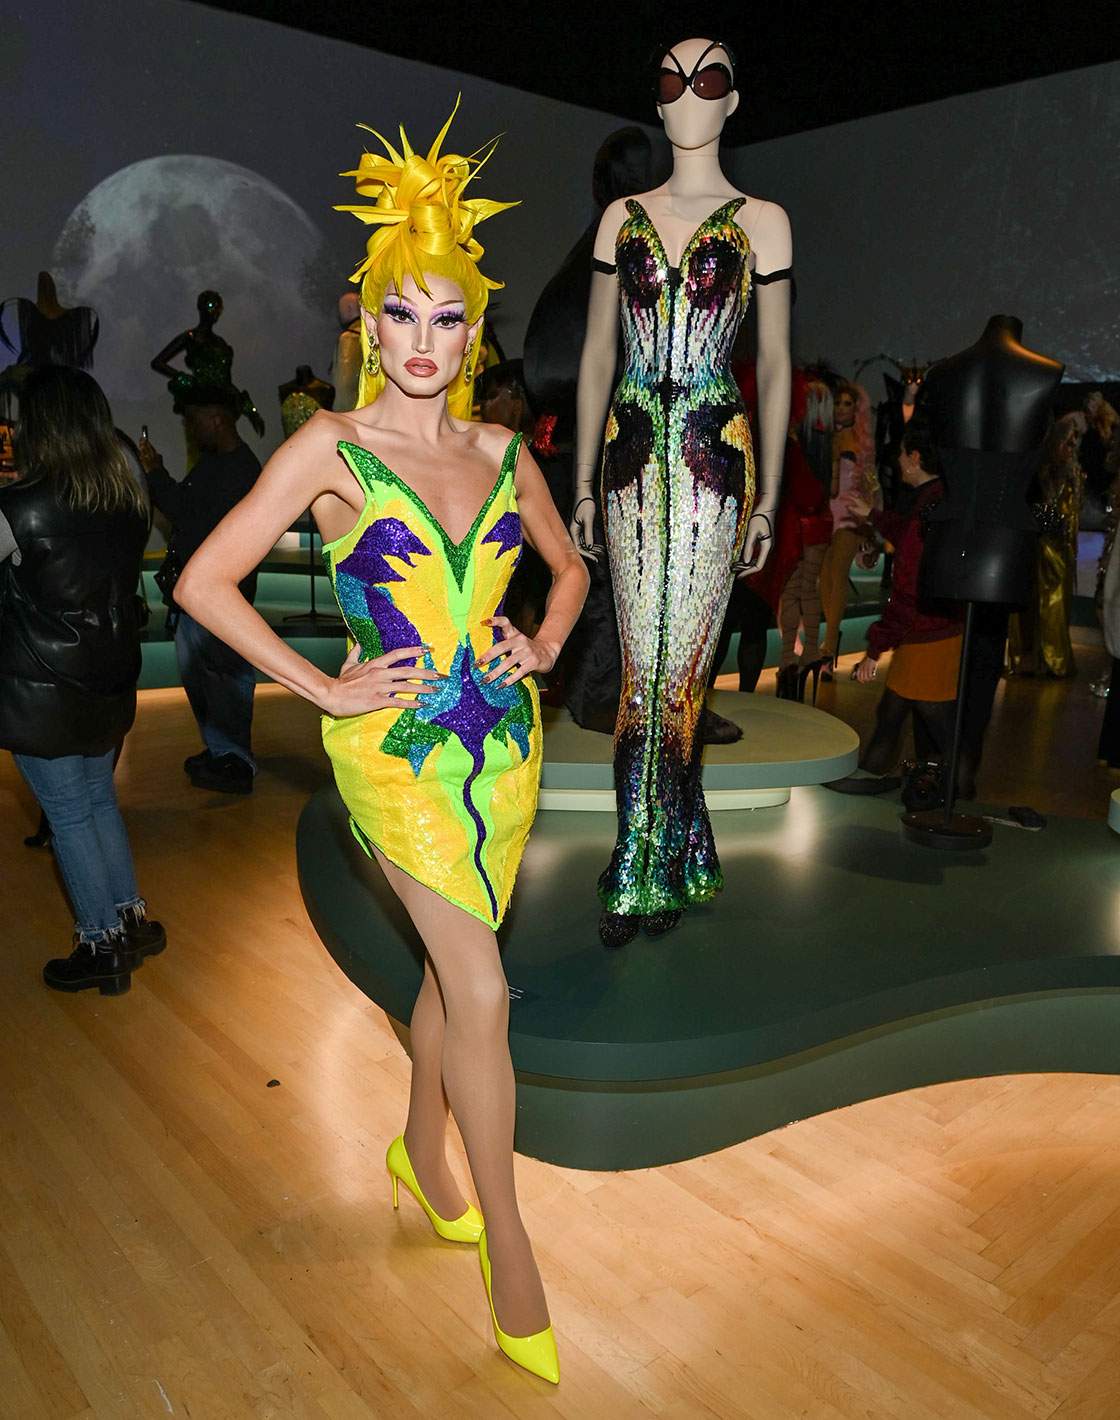 De cast van RuPaul's Drag Race bezoekt de Mugler-tentoonstelling in het Brooklyn Museum